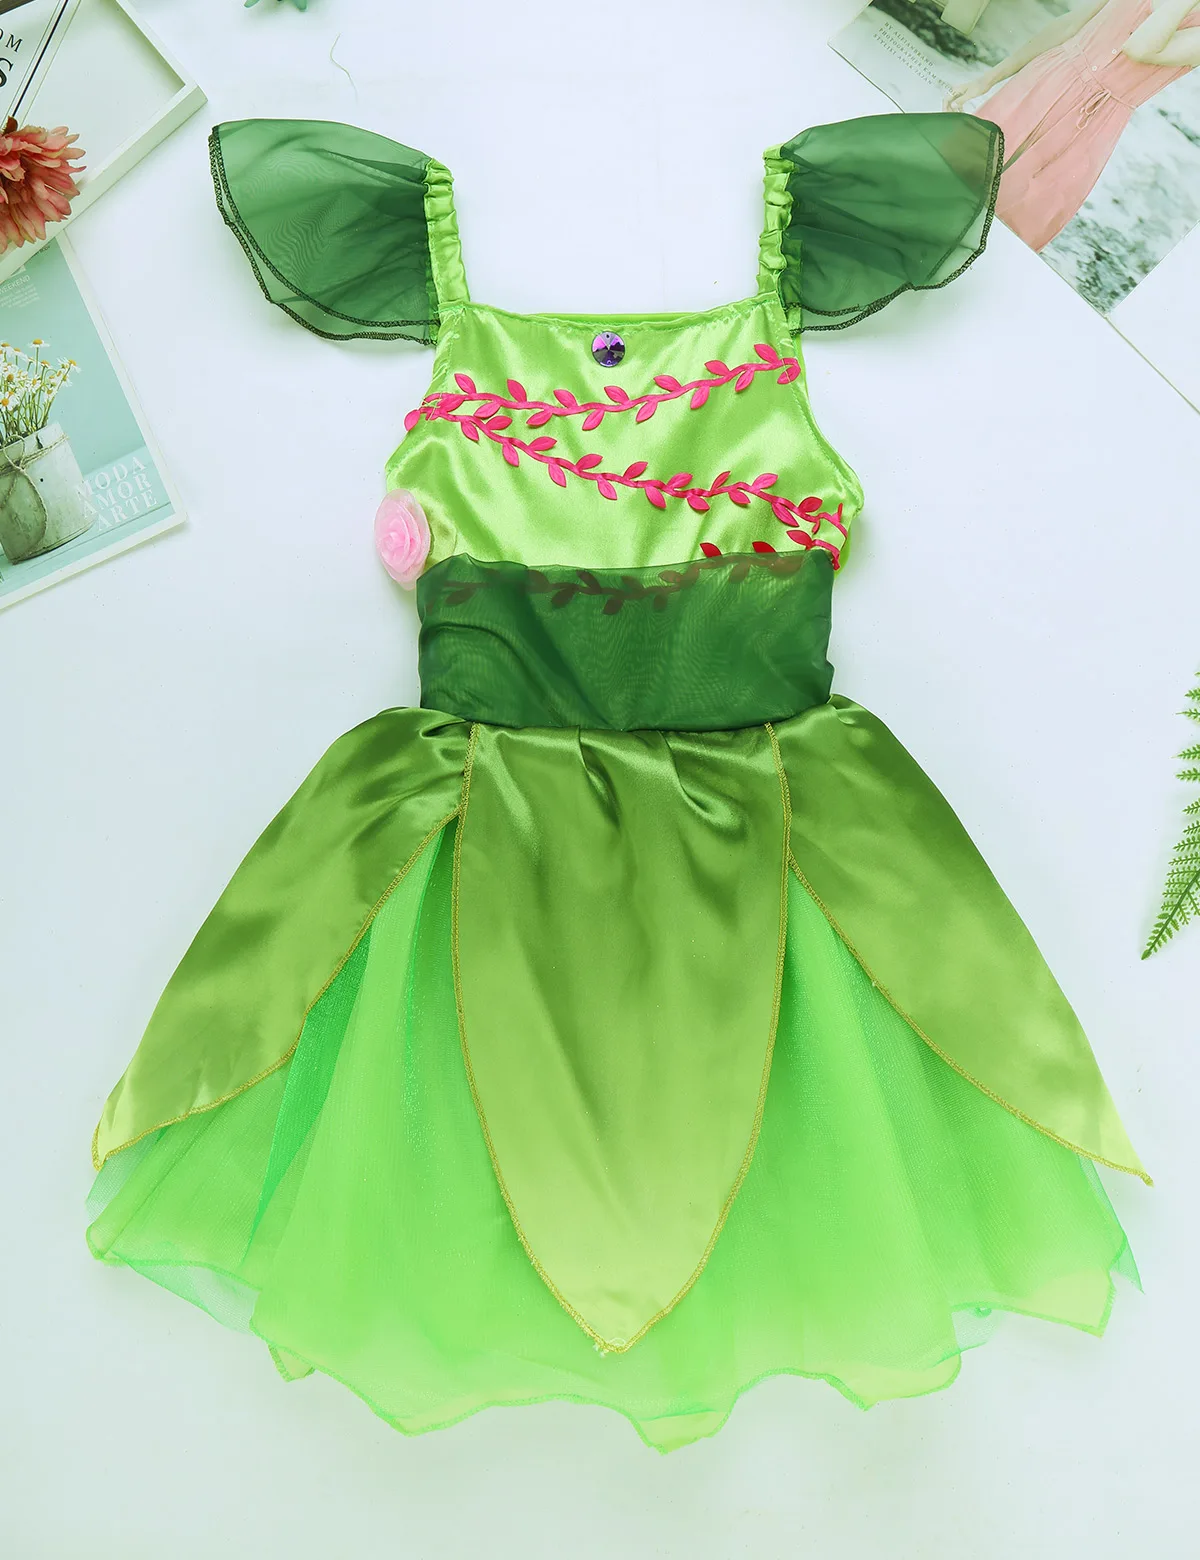 Сказочный костюм для девочек платье из сетчатой ткани с объемными цветами и рукавами-крылышками, со стразами, со съемными блестящими крыльями, костюм для Хеллоуина, косплей